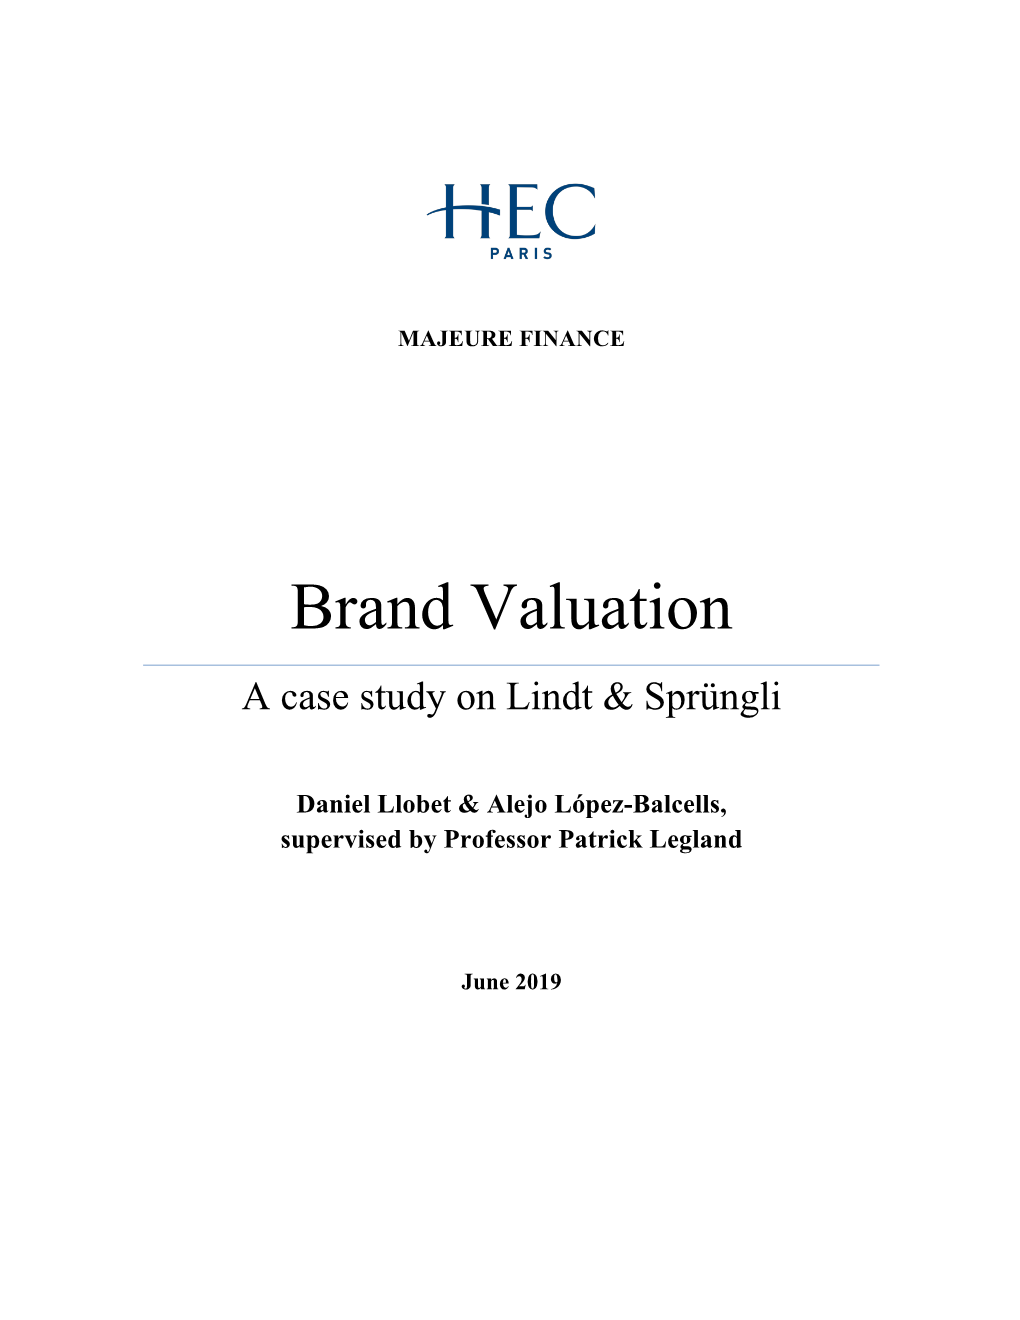 Brand Valuation a Case Study on Lindt & Sprüngli